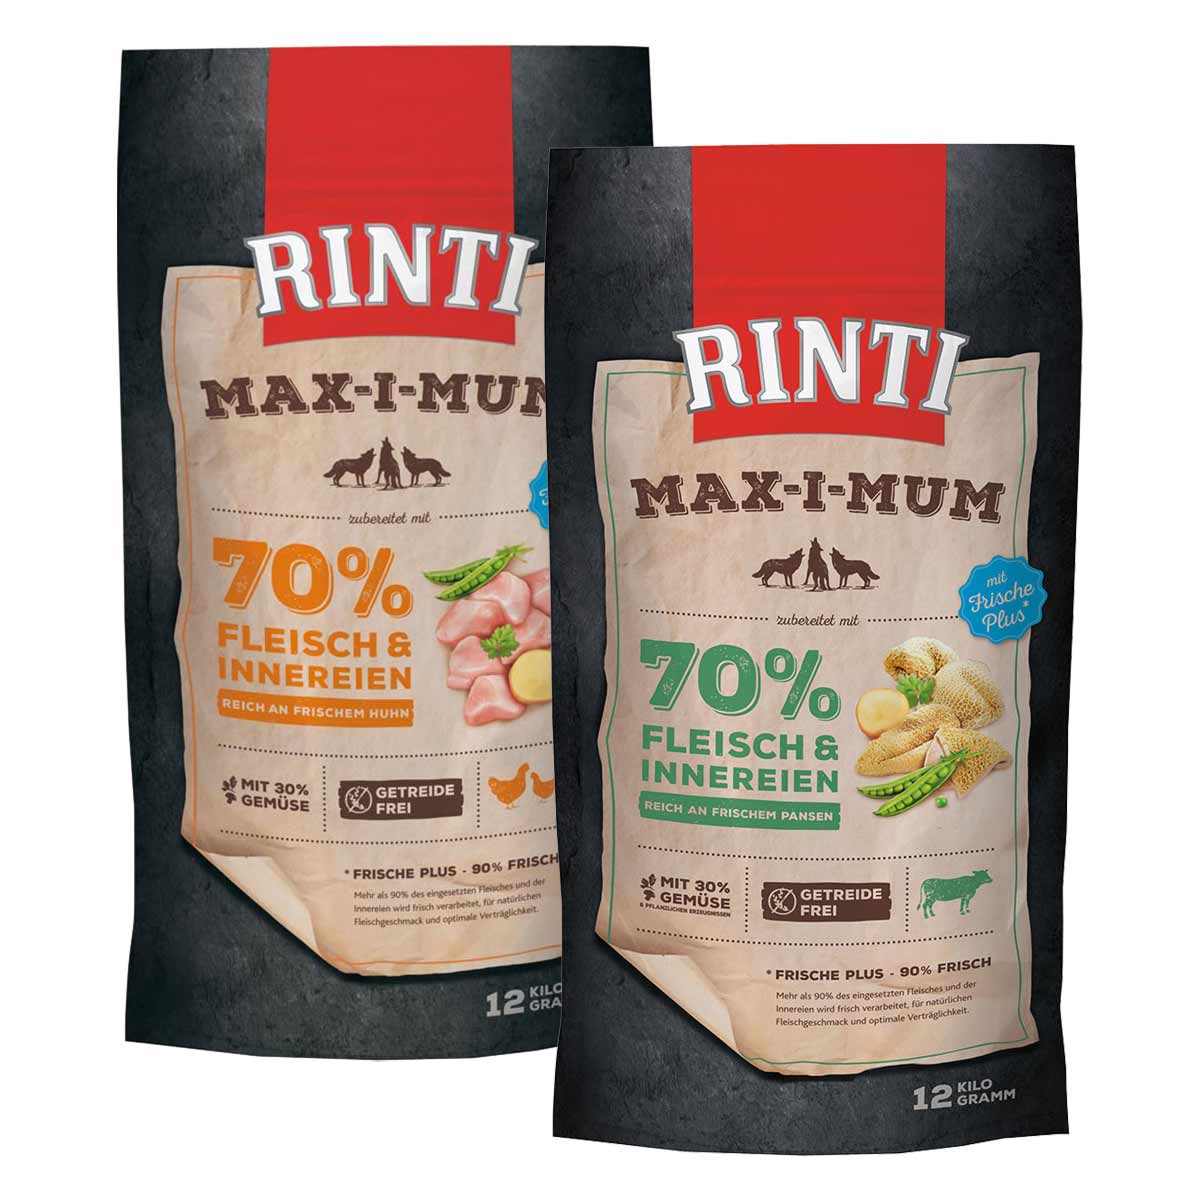 Rinti Max-i-Mum Huhn und Pansen Mixpaket 2x12kg von Rinti